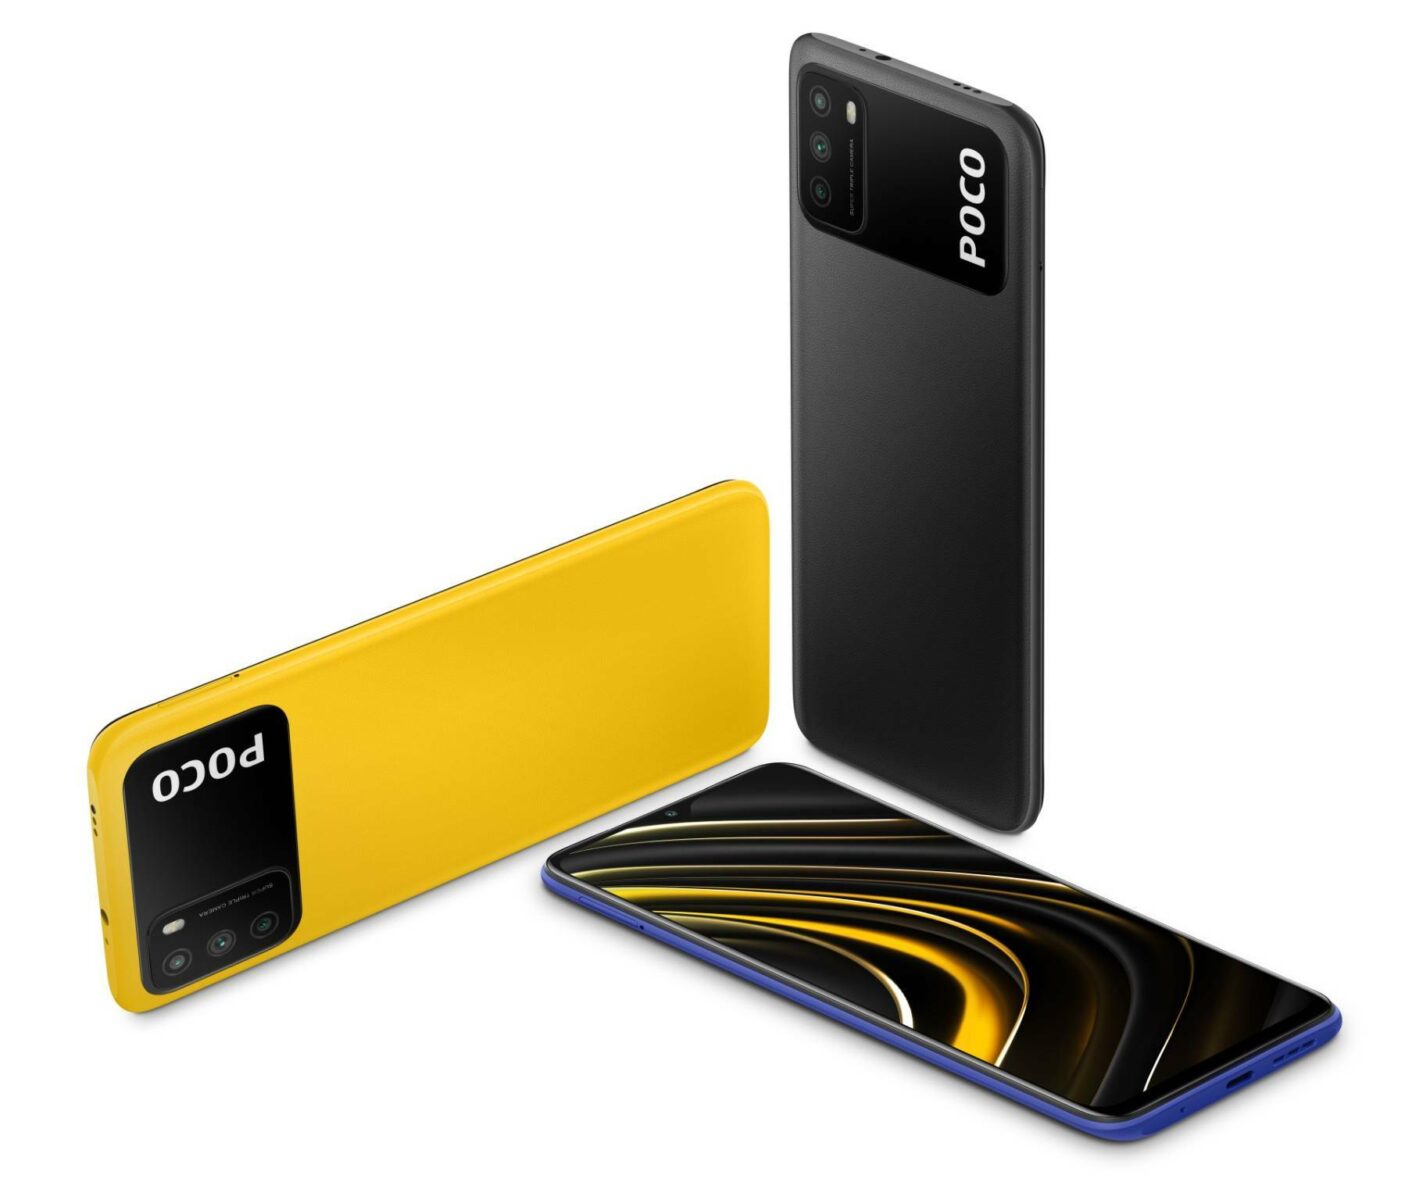 POCO M3, il nuovo smartphone super economico di Xiaomi in offerta a soli 110 Euro